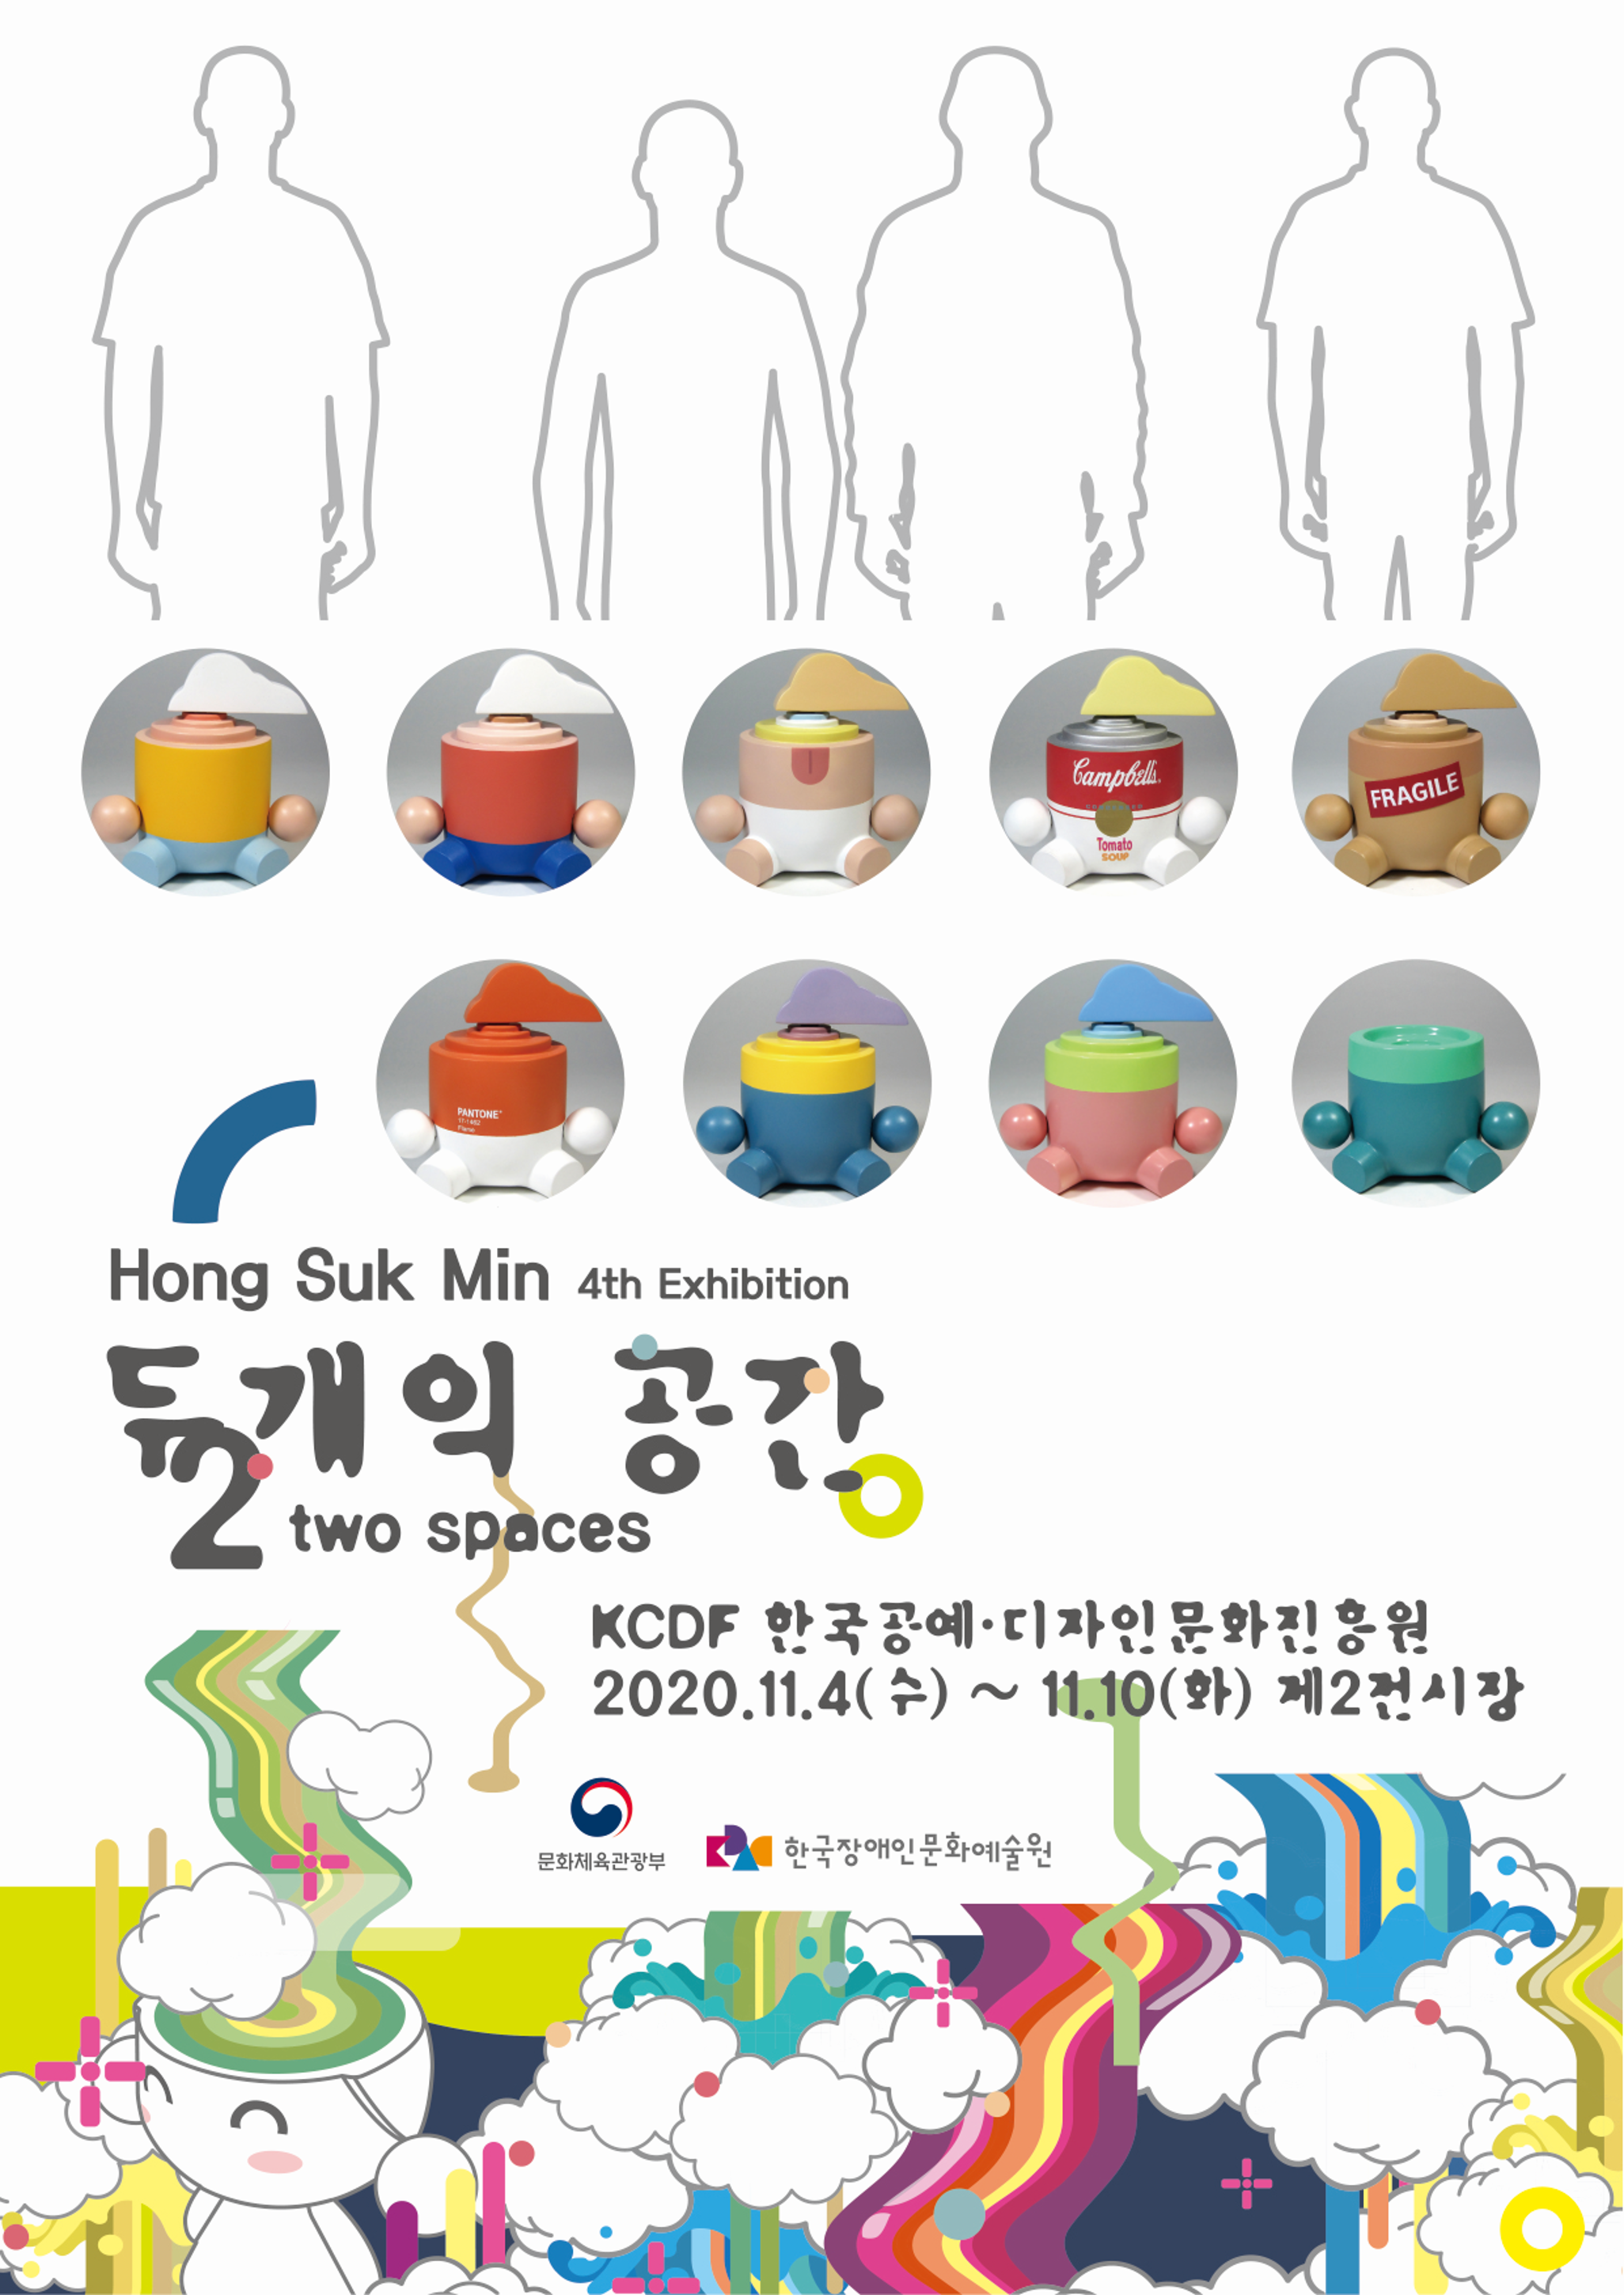 Hong Suk Min 4th Exhibition | 두개의 공간 | Two spaces | KCDF 한국공예·디자인문화진흥원 2020.11.4(수)~11.10(화) 제2전시장
문화체육관광부, 한국장애인문화예술원